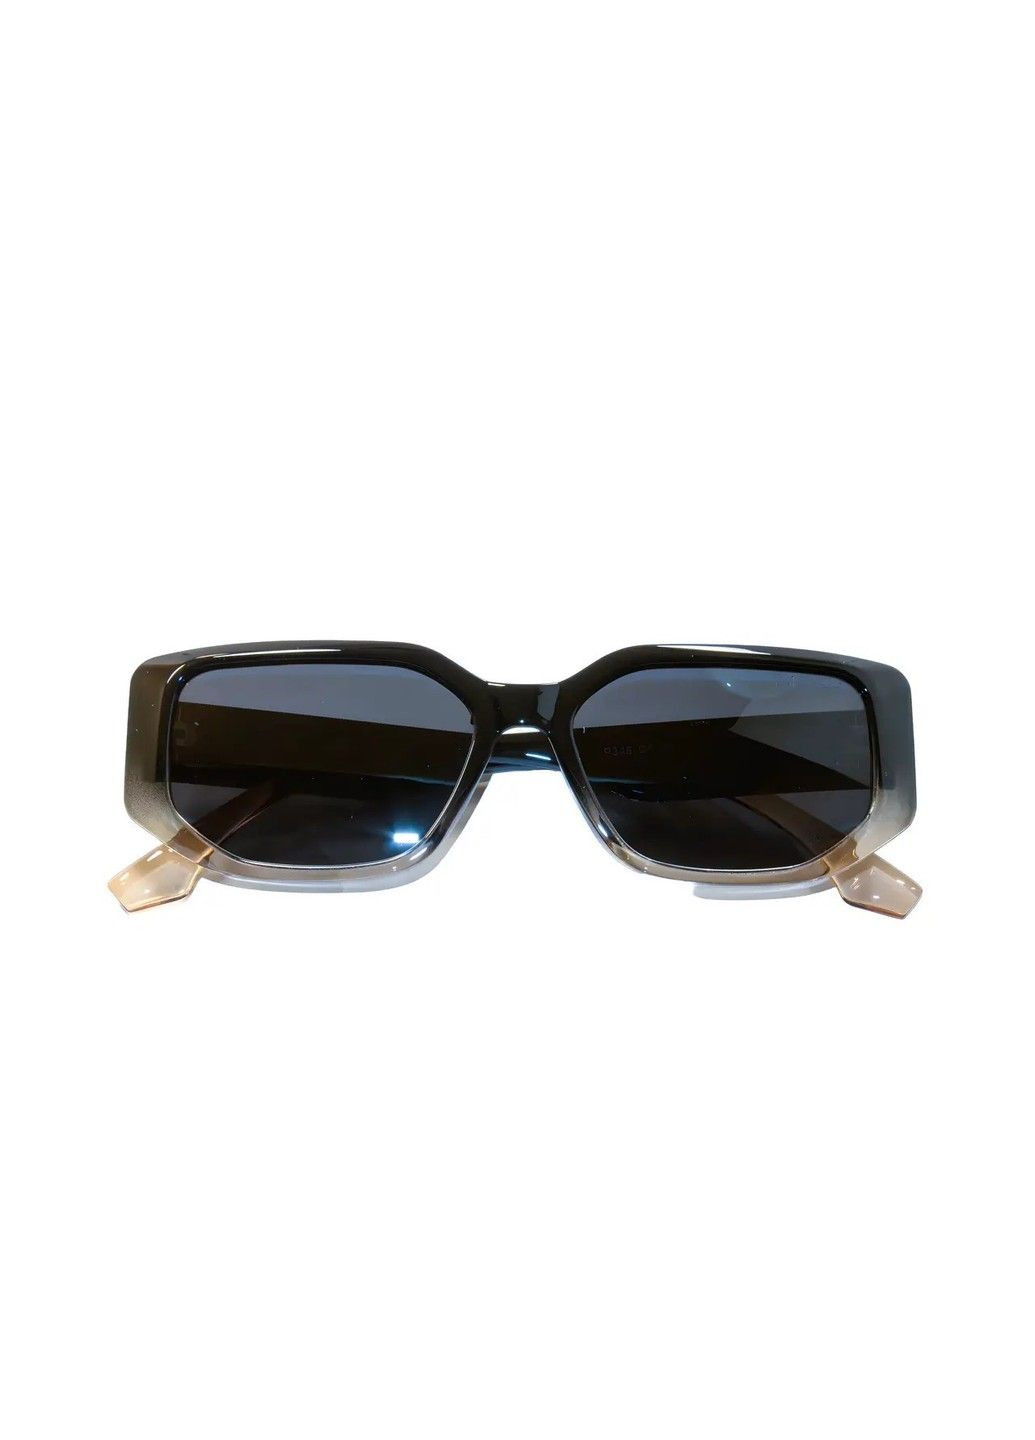 Cолнцезащитные поляризационные женские очки P346-5 Polarized (294607664)